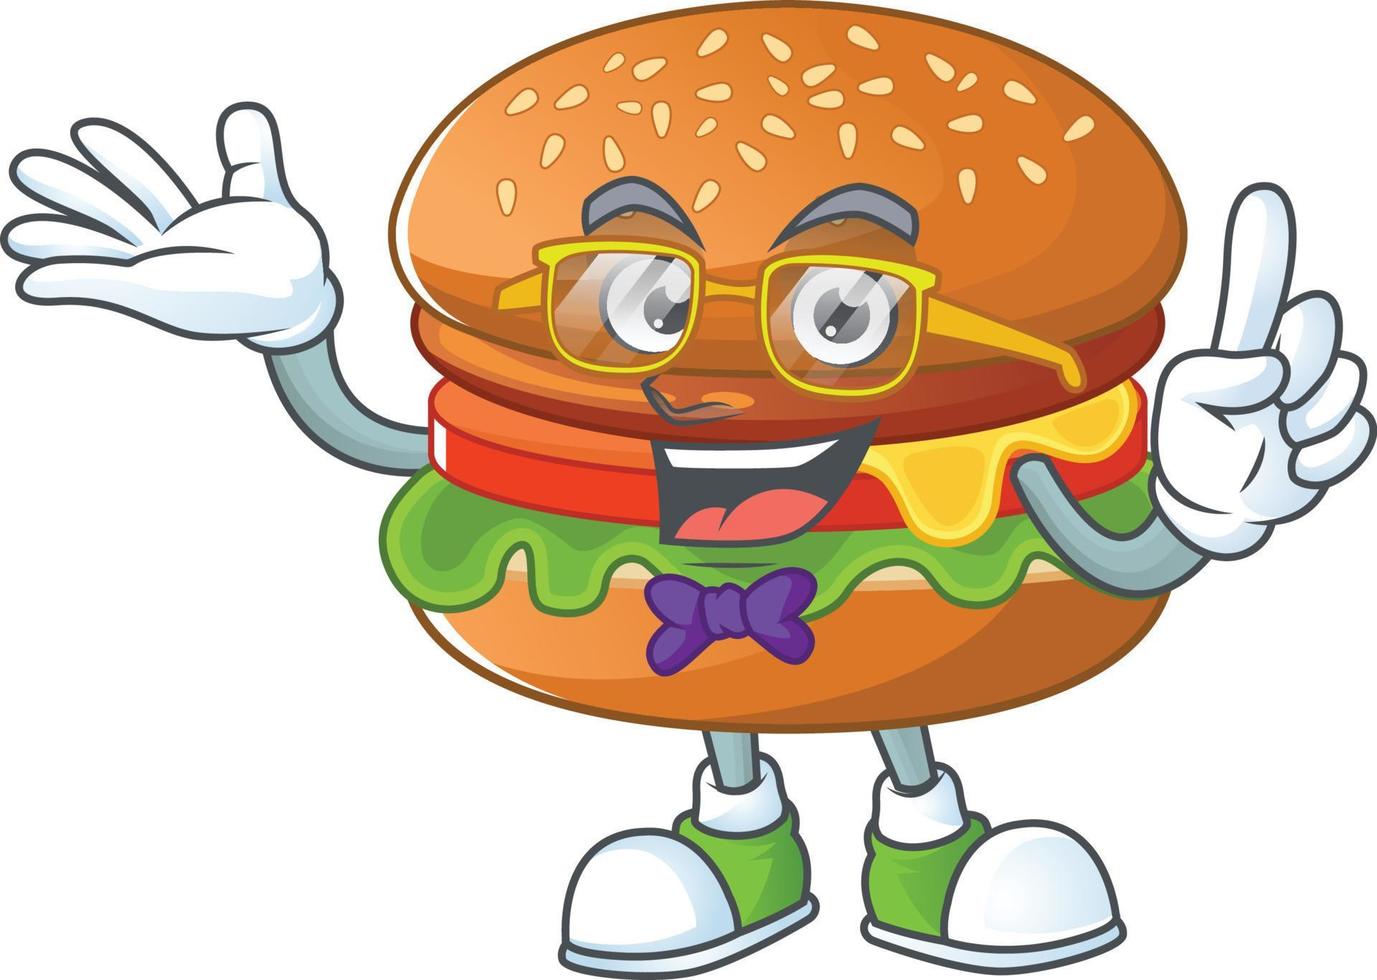 een tekenfilm karakter van Hamburger vector